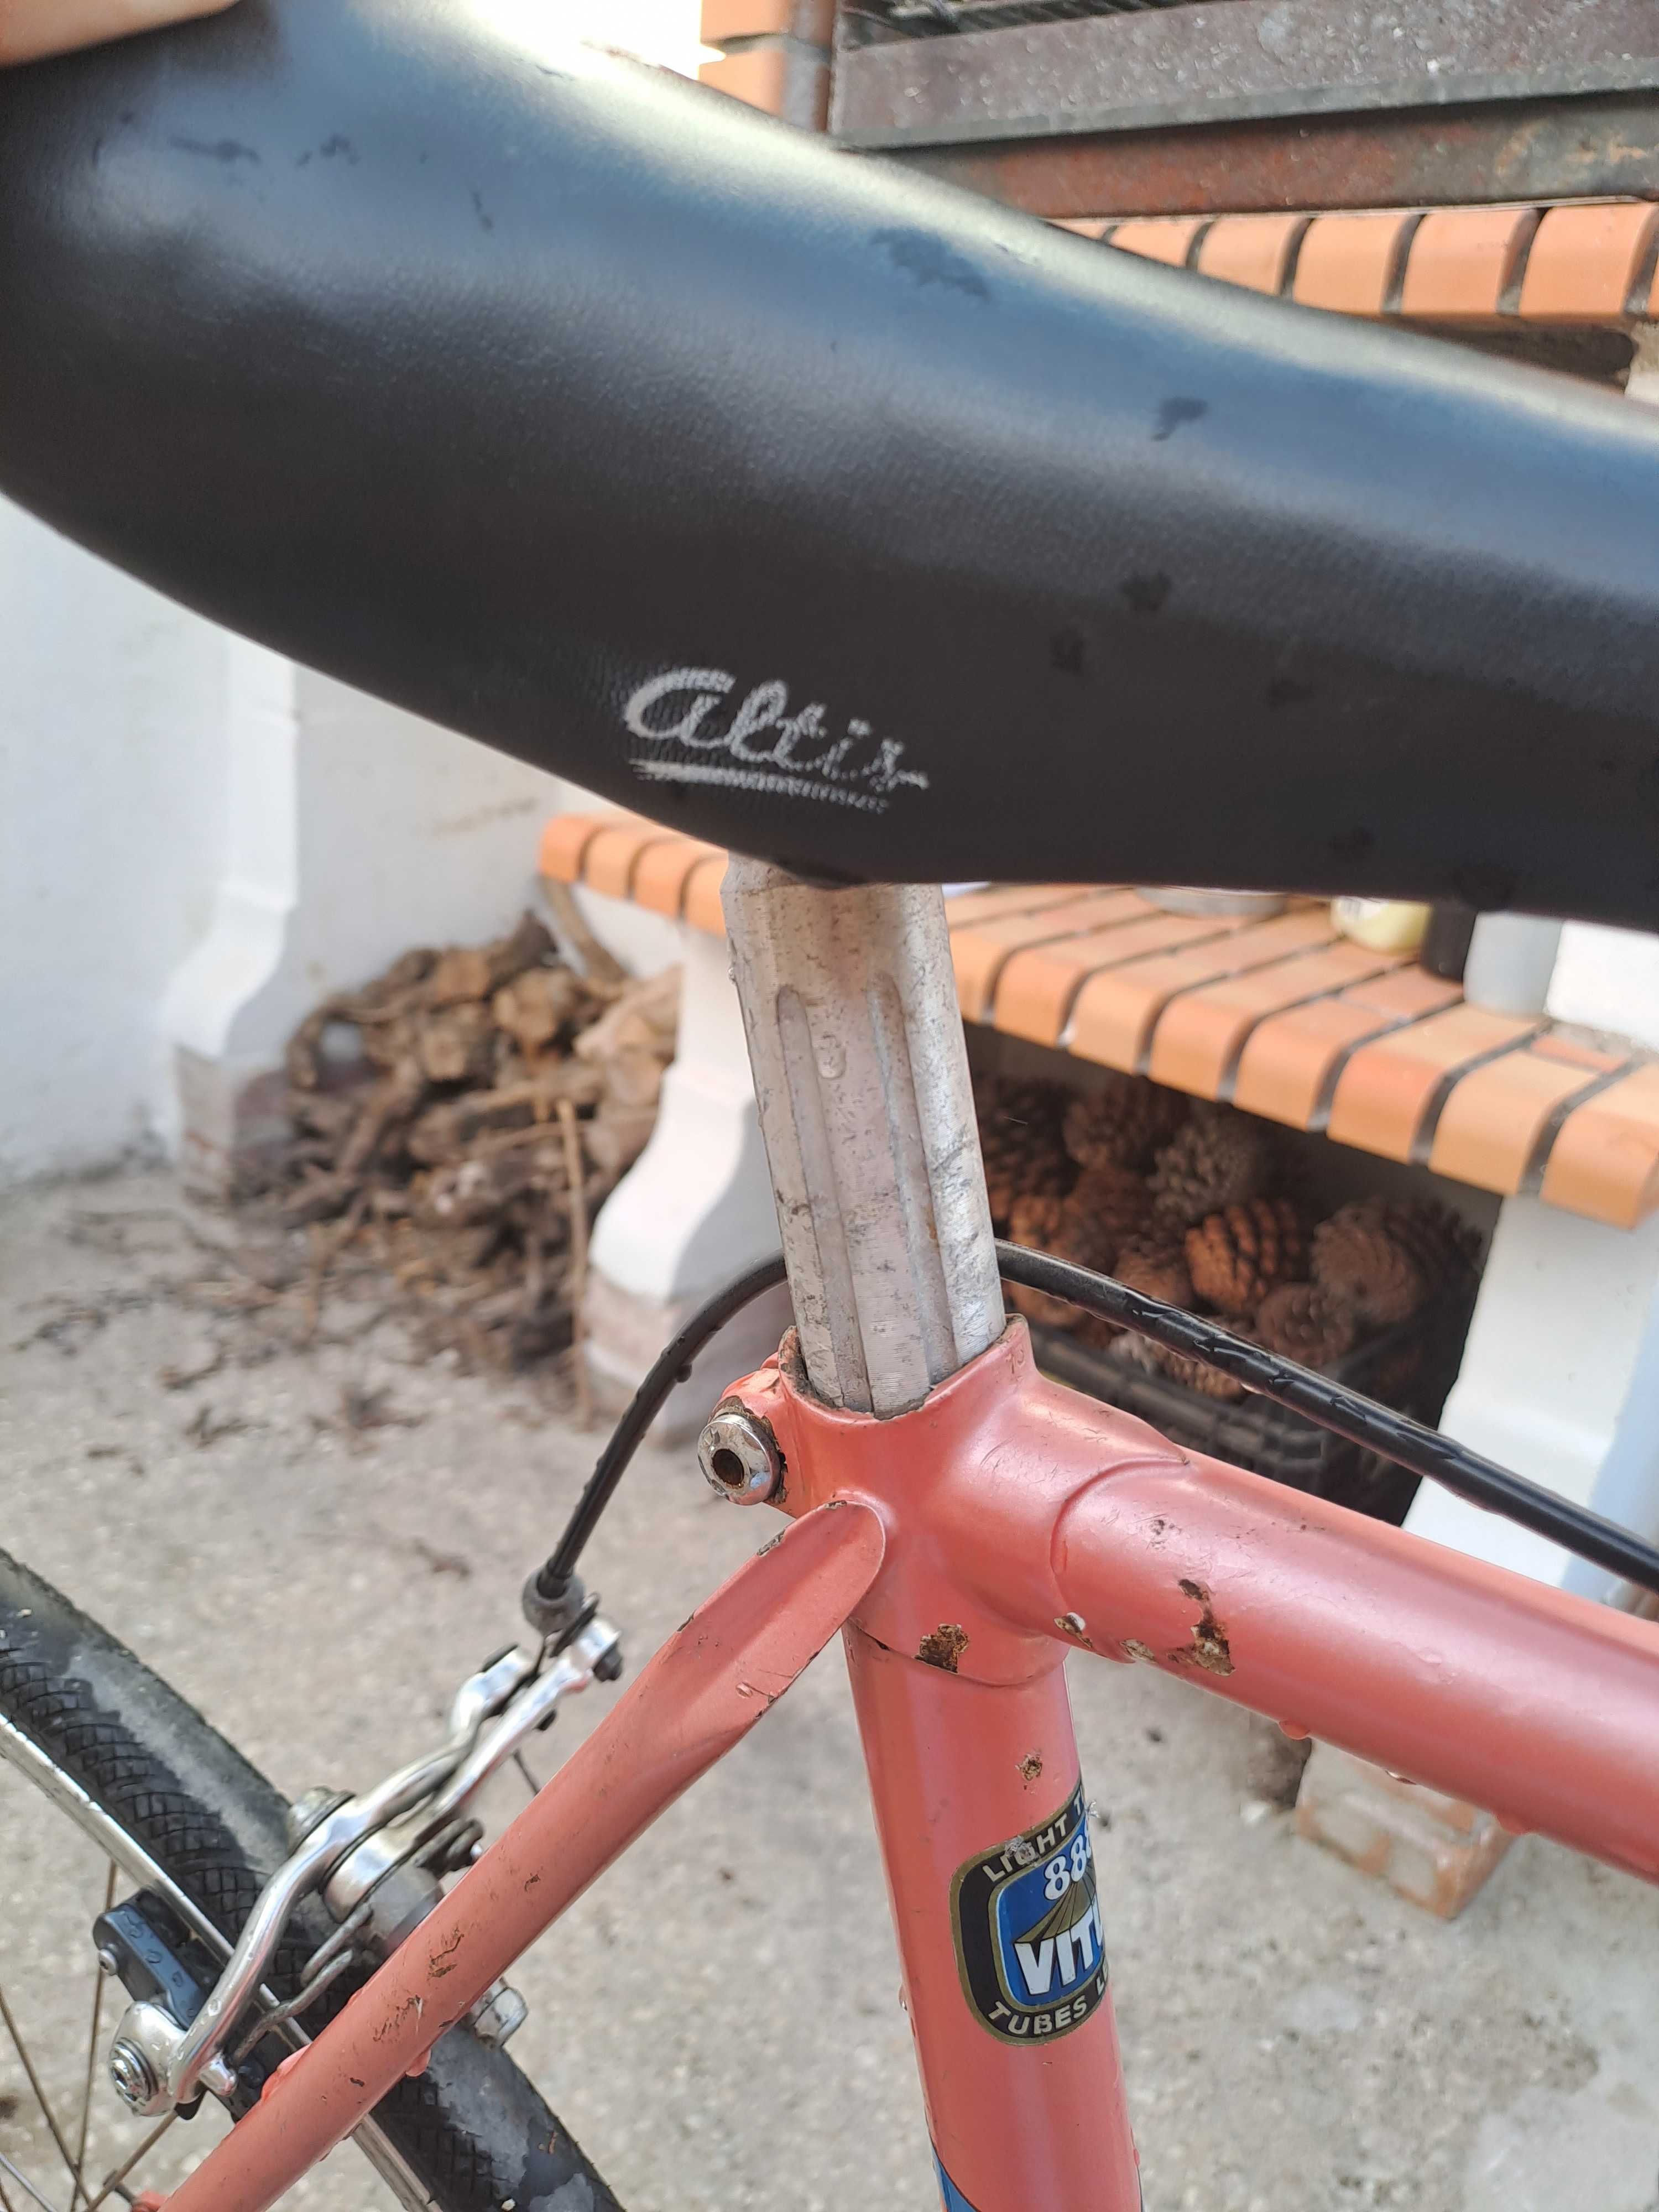 Bicicleta ALTIS clássica original (tam. 55)